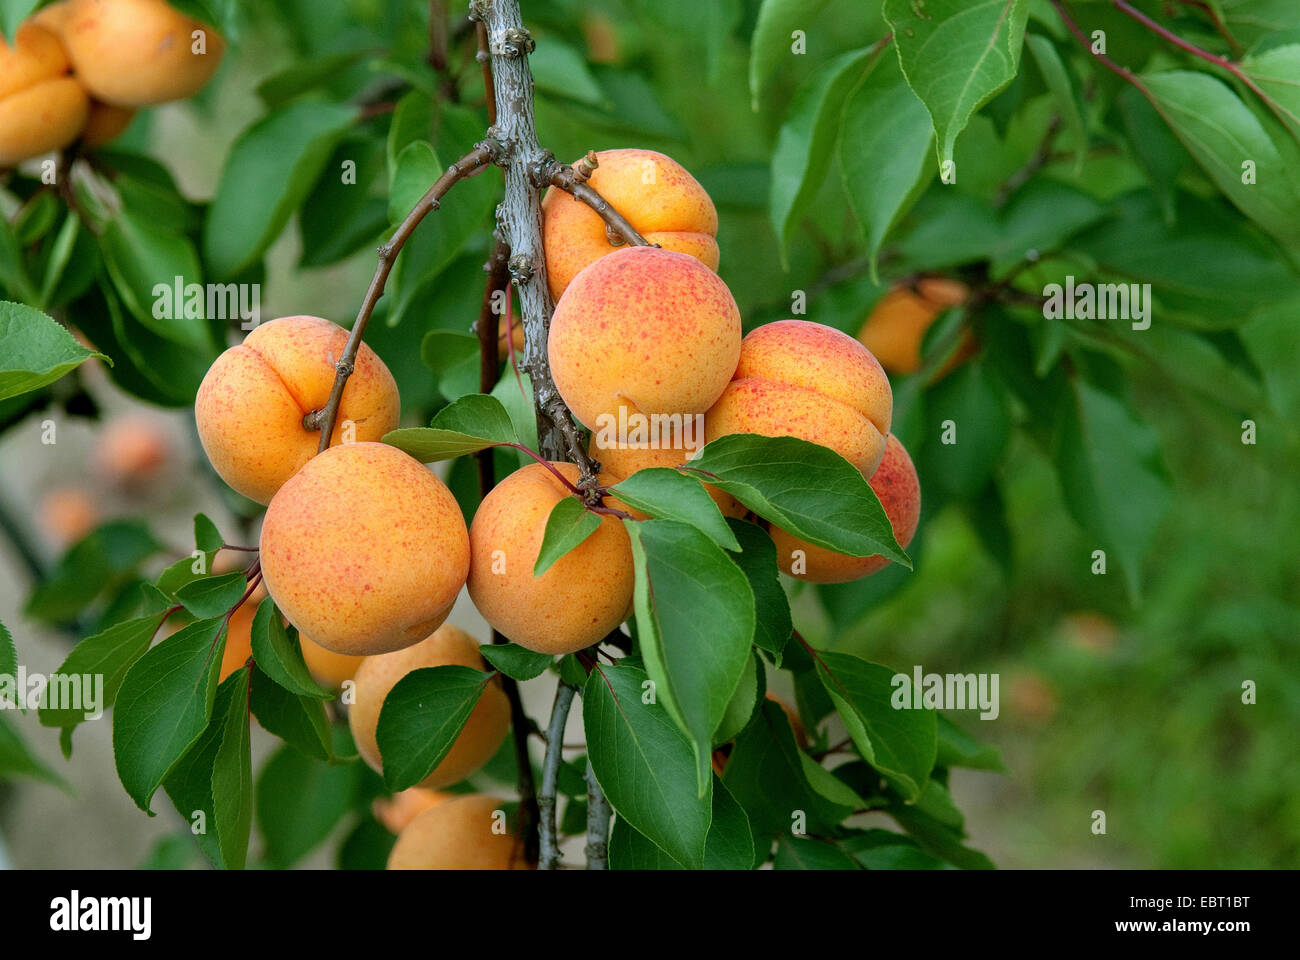 apricot tree (Prunus armeniaca 'Hargrand', Prunus armeniaca Hargrand), cultivar Hargrand, apricots on a tree Stock Photo